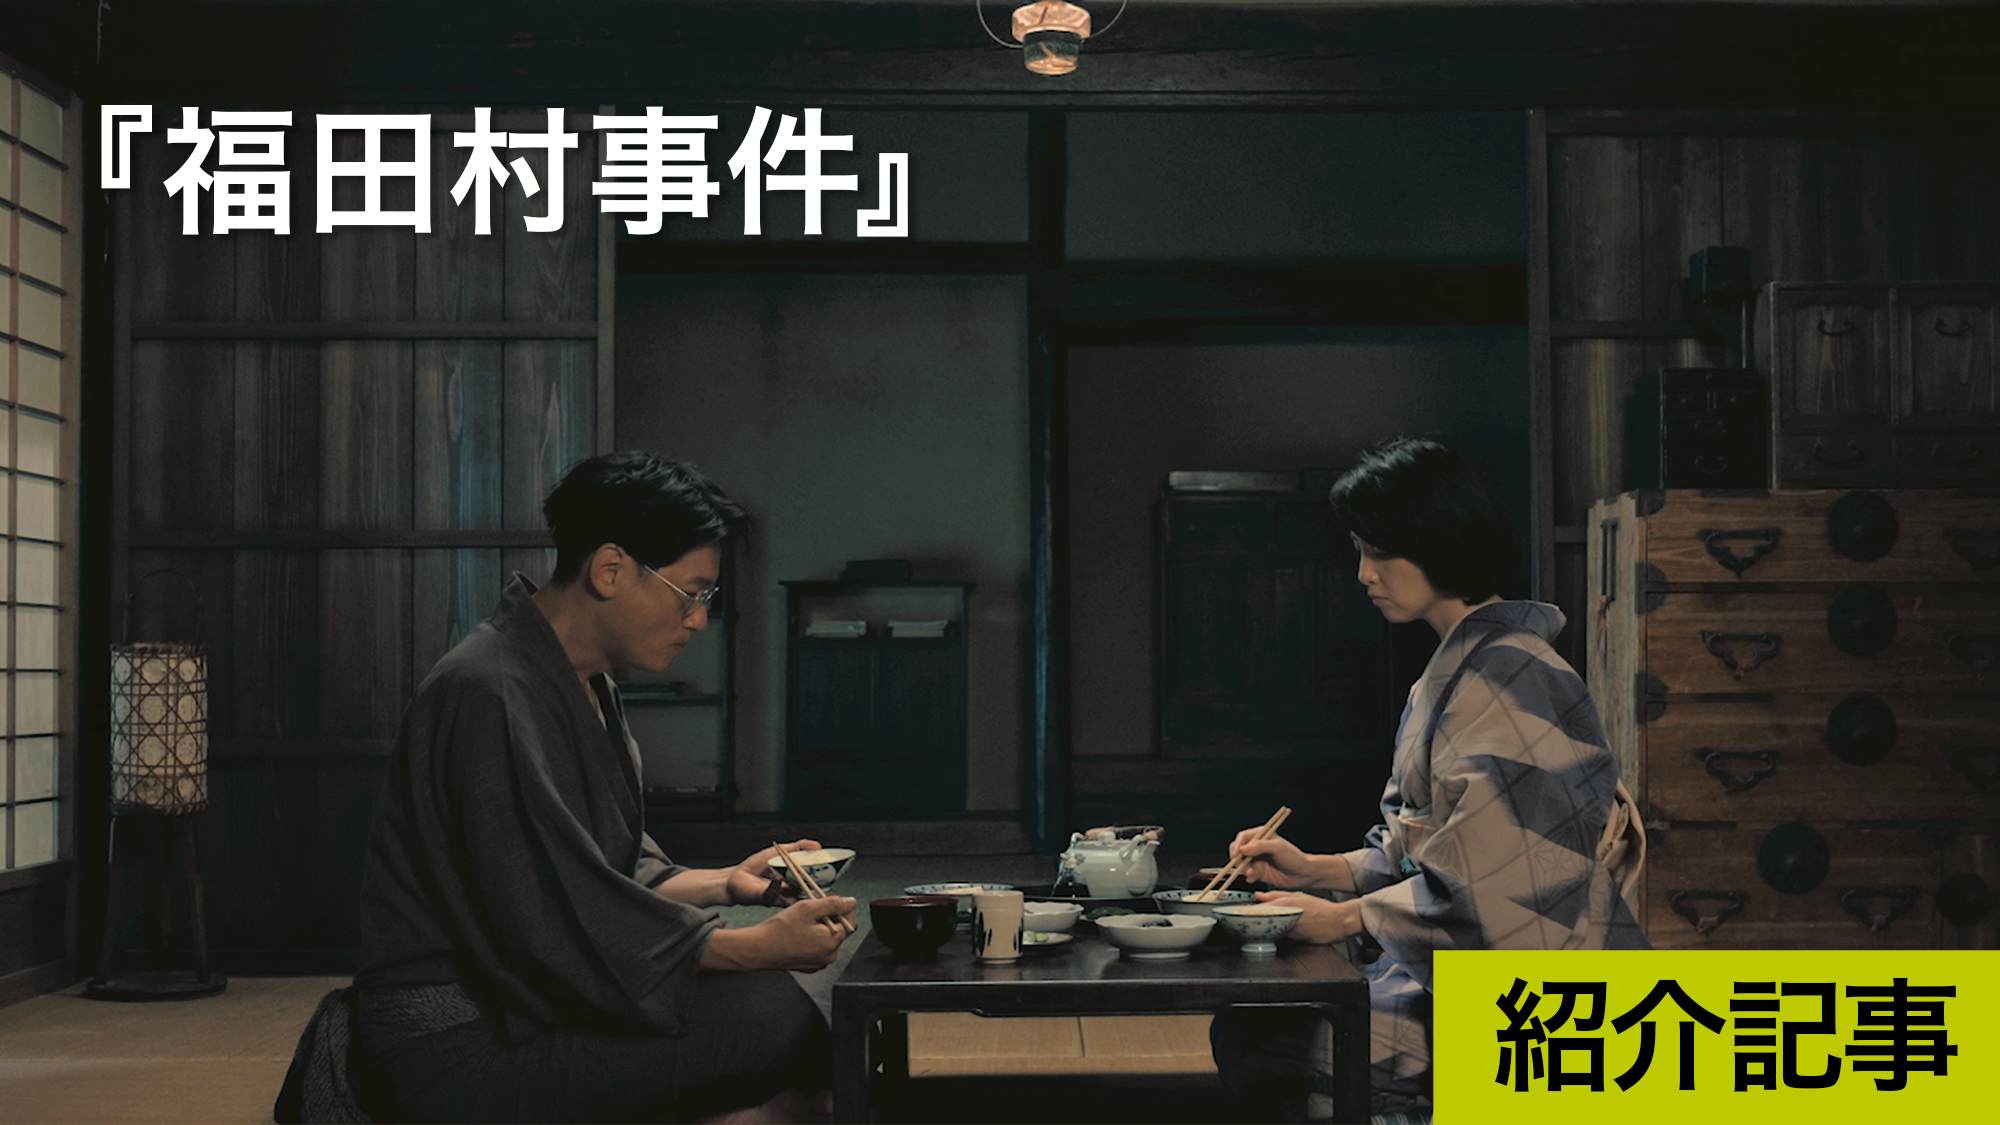 『福田村事件』「劇映画とドキュメンタリーに大きな違いはない」という森達也監督最新作